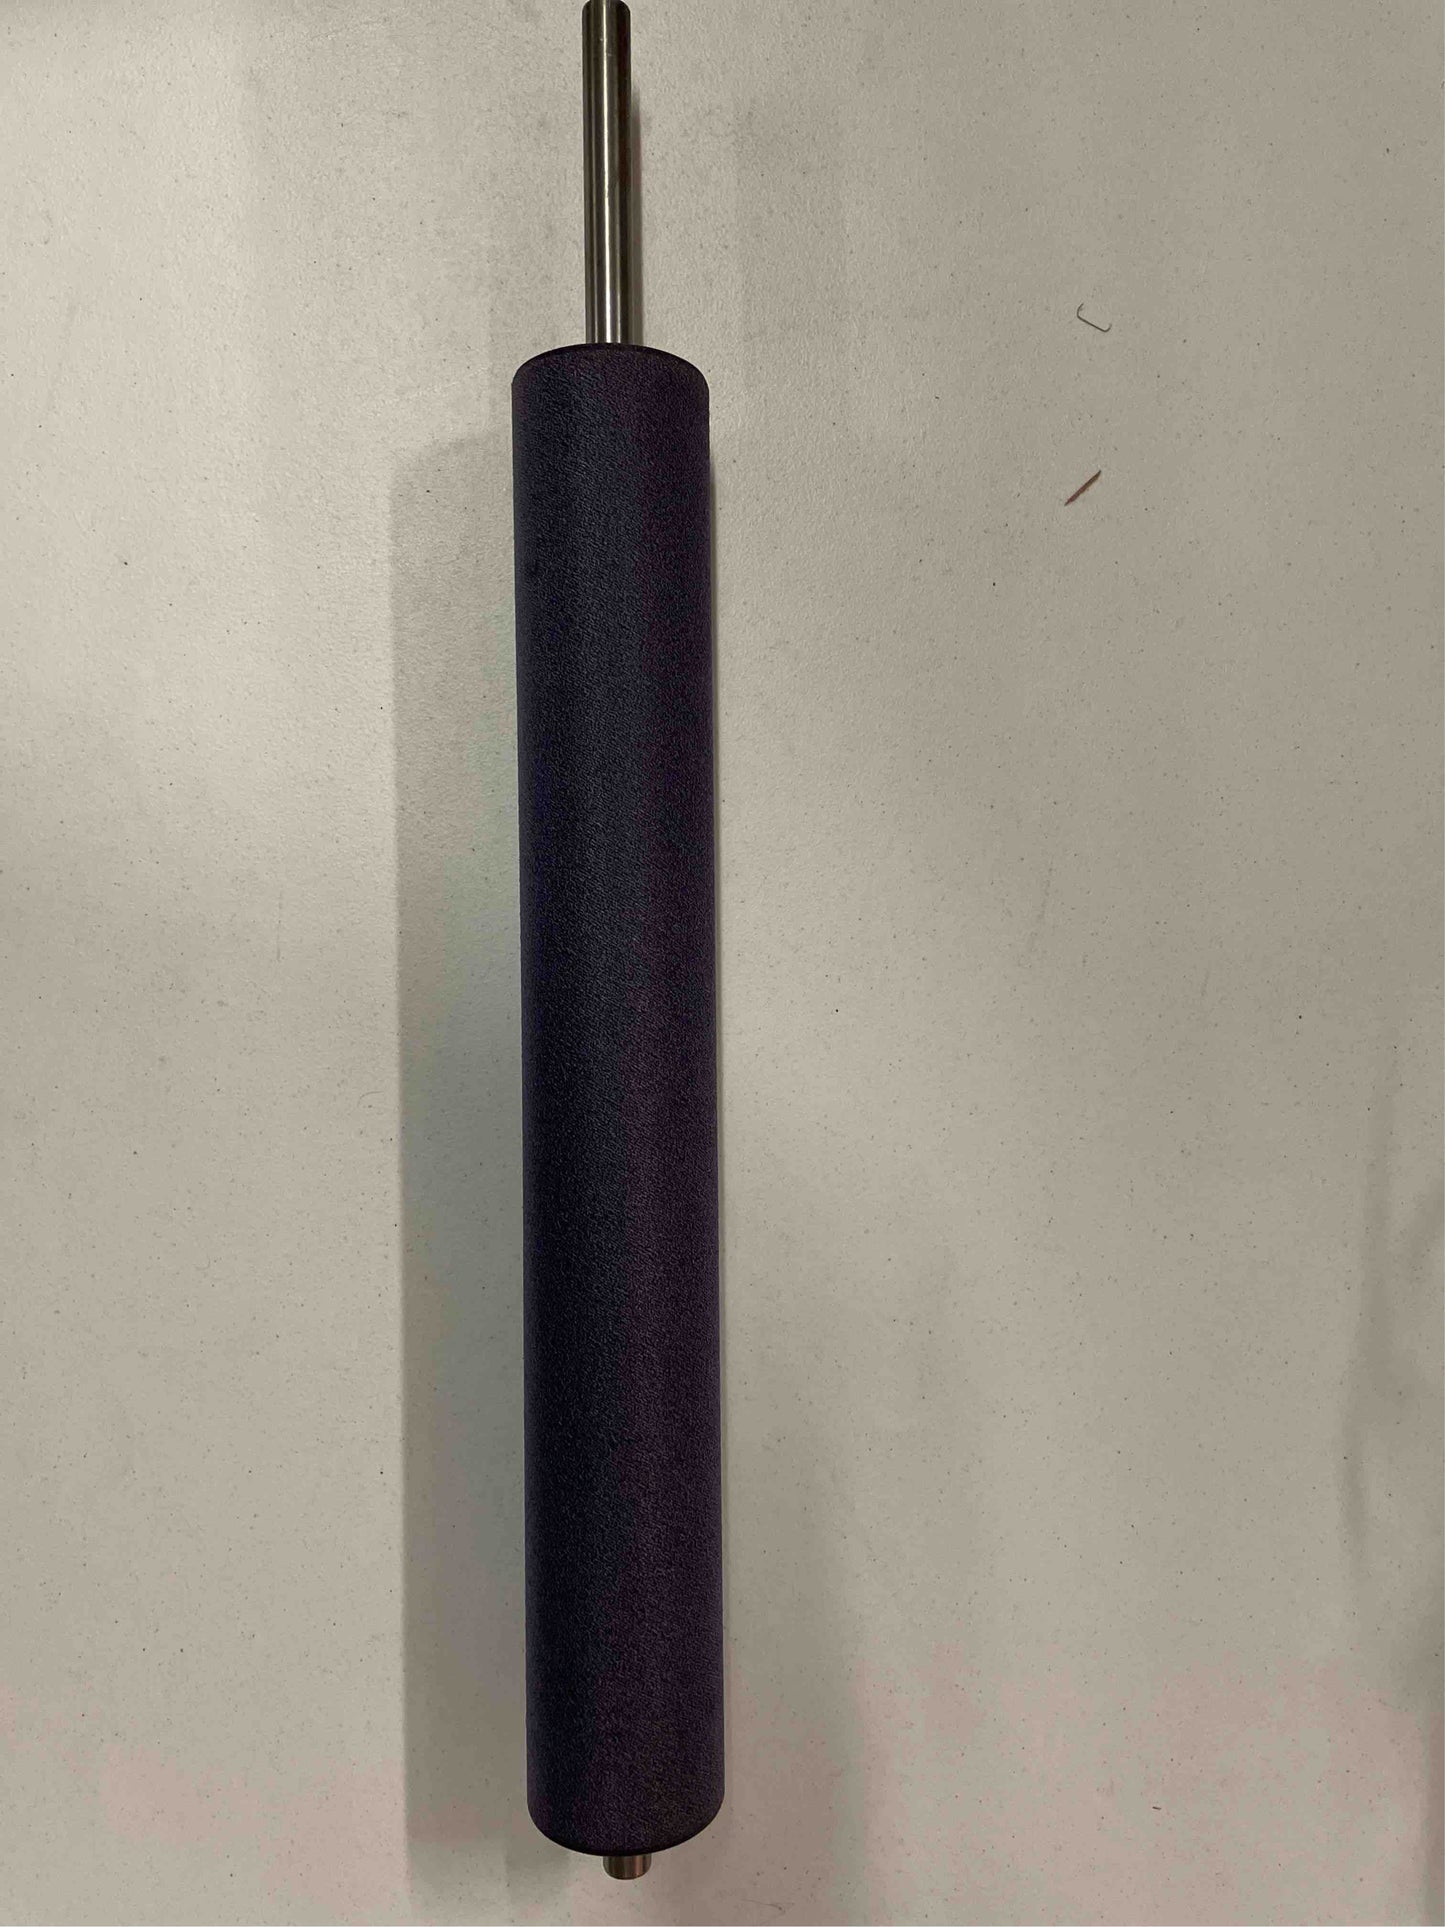 W136-1 

Prestretch roller 3" x 32" w/shaft W136-1 